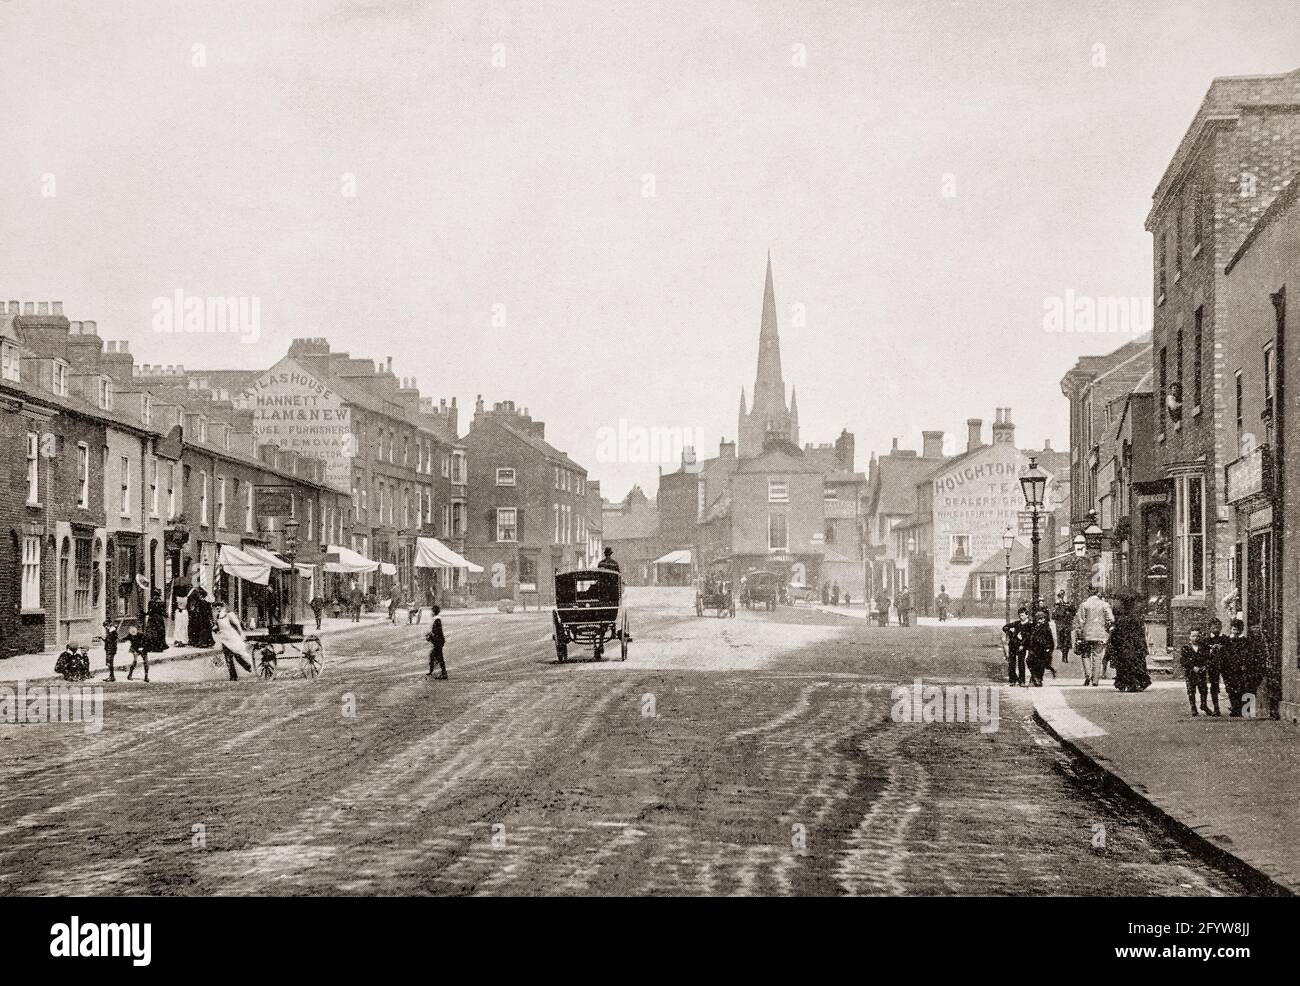 Eine Ansicht des breiten Westgates in Grantham, einer Marktstadt in Lincolnshire, England aus dem späten 19. Jahrhundert, die im Domesday Book von 1086 erwähnt wurde, das sich entwickelte, als die Eisenbahn in den 1850er Jahren kam. Stockfoto